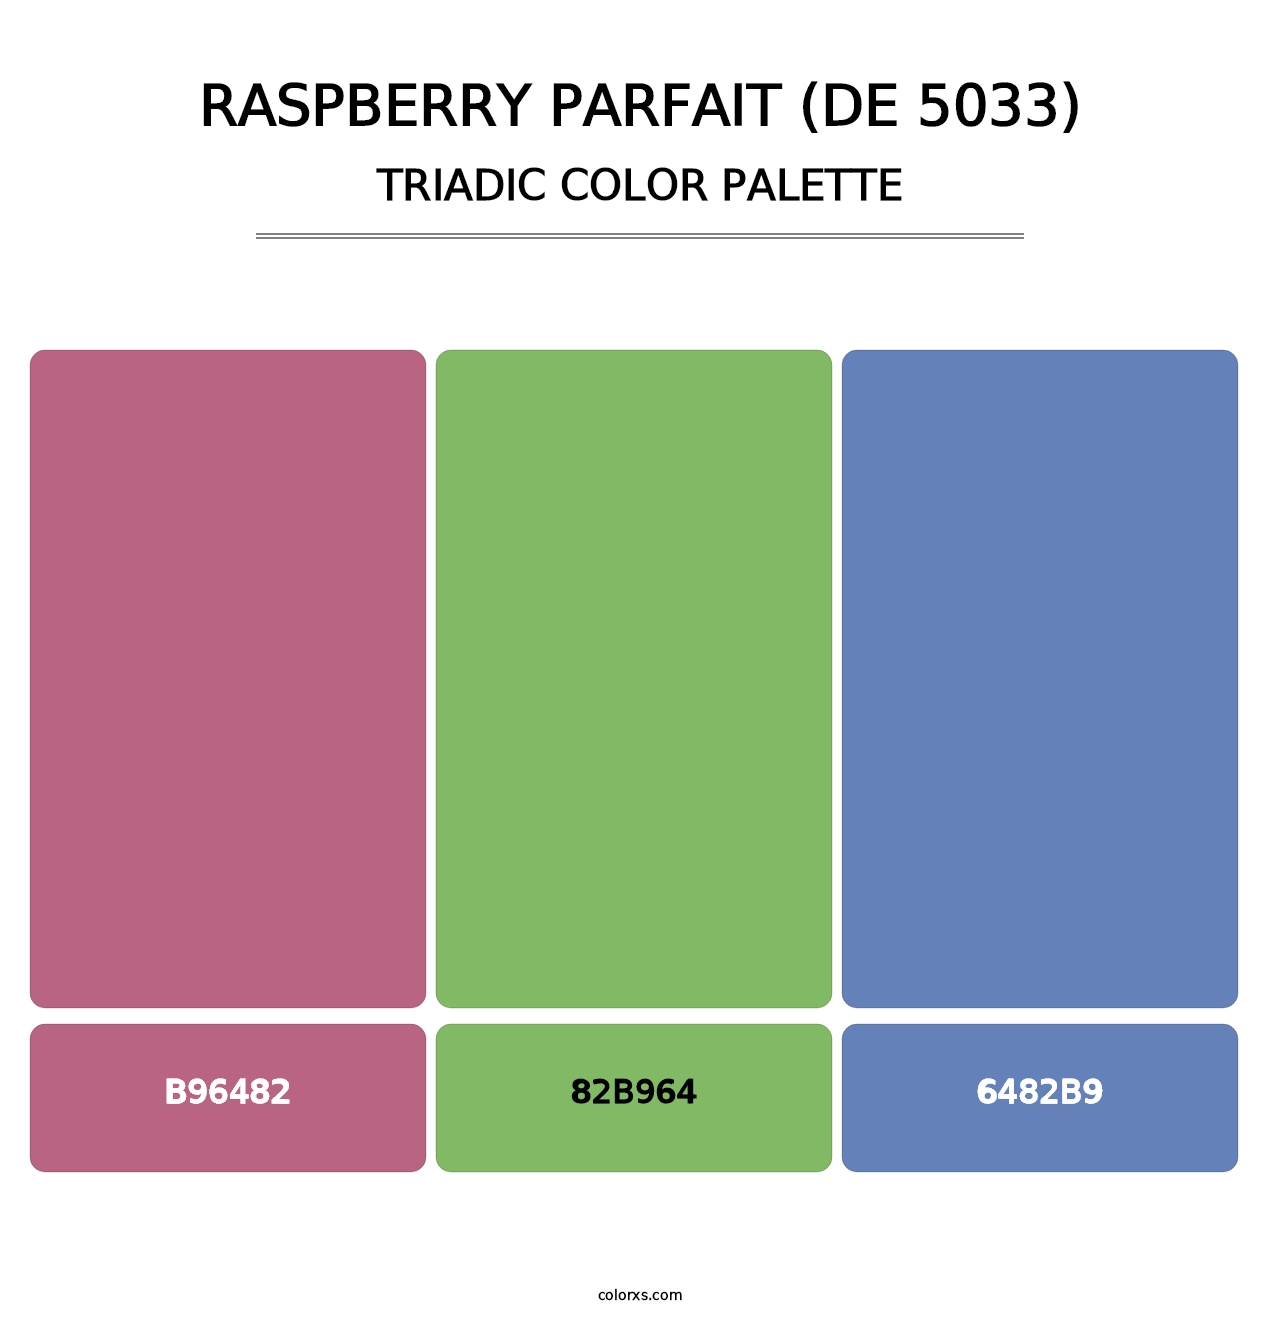 Raspberry Parfait (DE 5033) - Triadic Color Palette